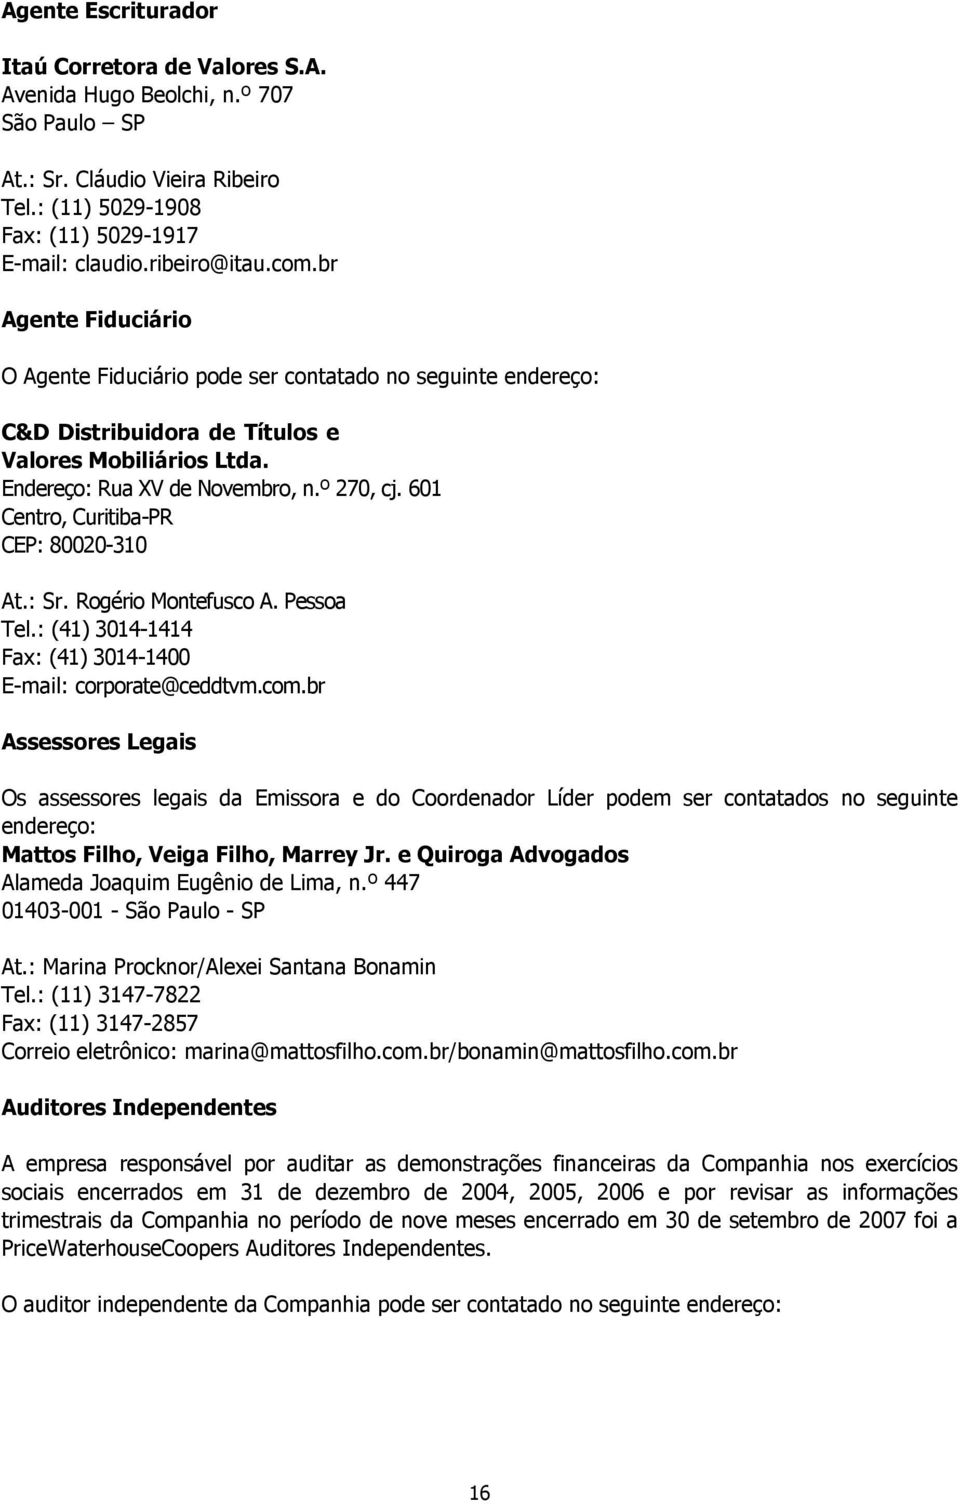 601 Centro, Curitiba-PR CEP: 80020-310 At.: Sr. Rogério Montefusco A. Pessoa Tel.: (41) 3014-1414 Fax: (41) 3014-1400 E-mail: corporate@ceddtvm.com.